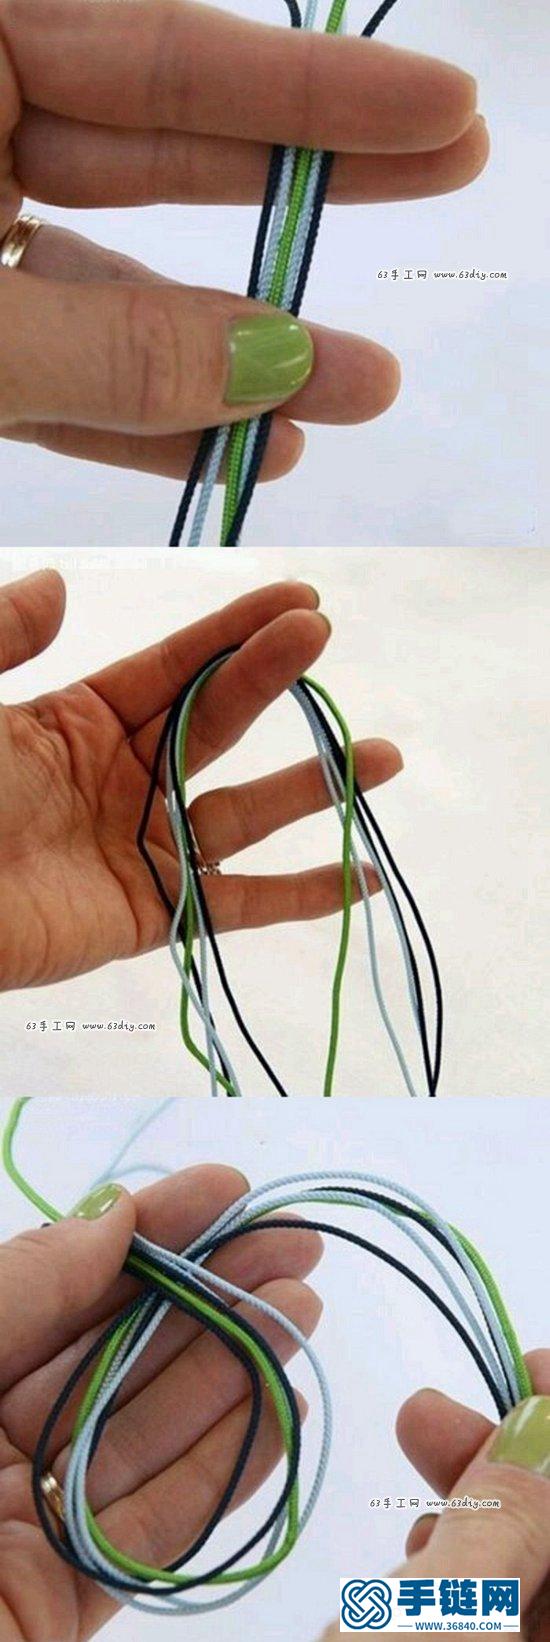 简洁大方的小清新手链手绳编绳手工教程